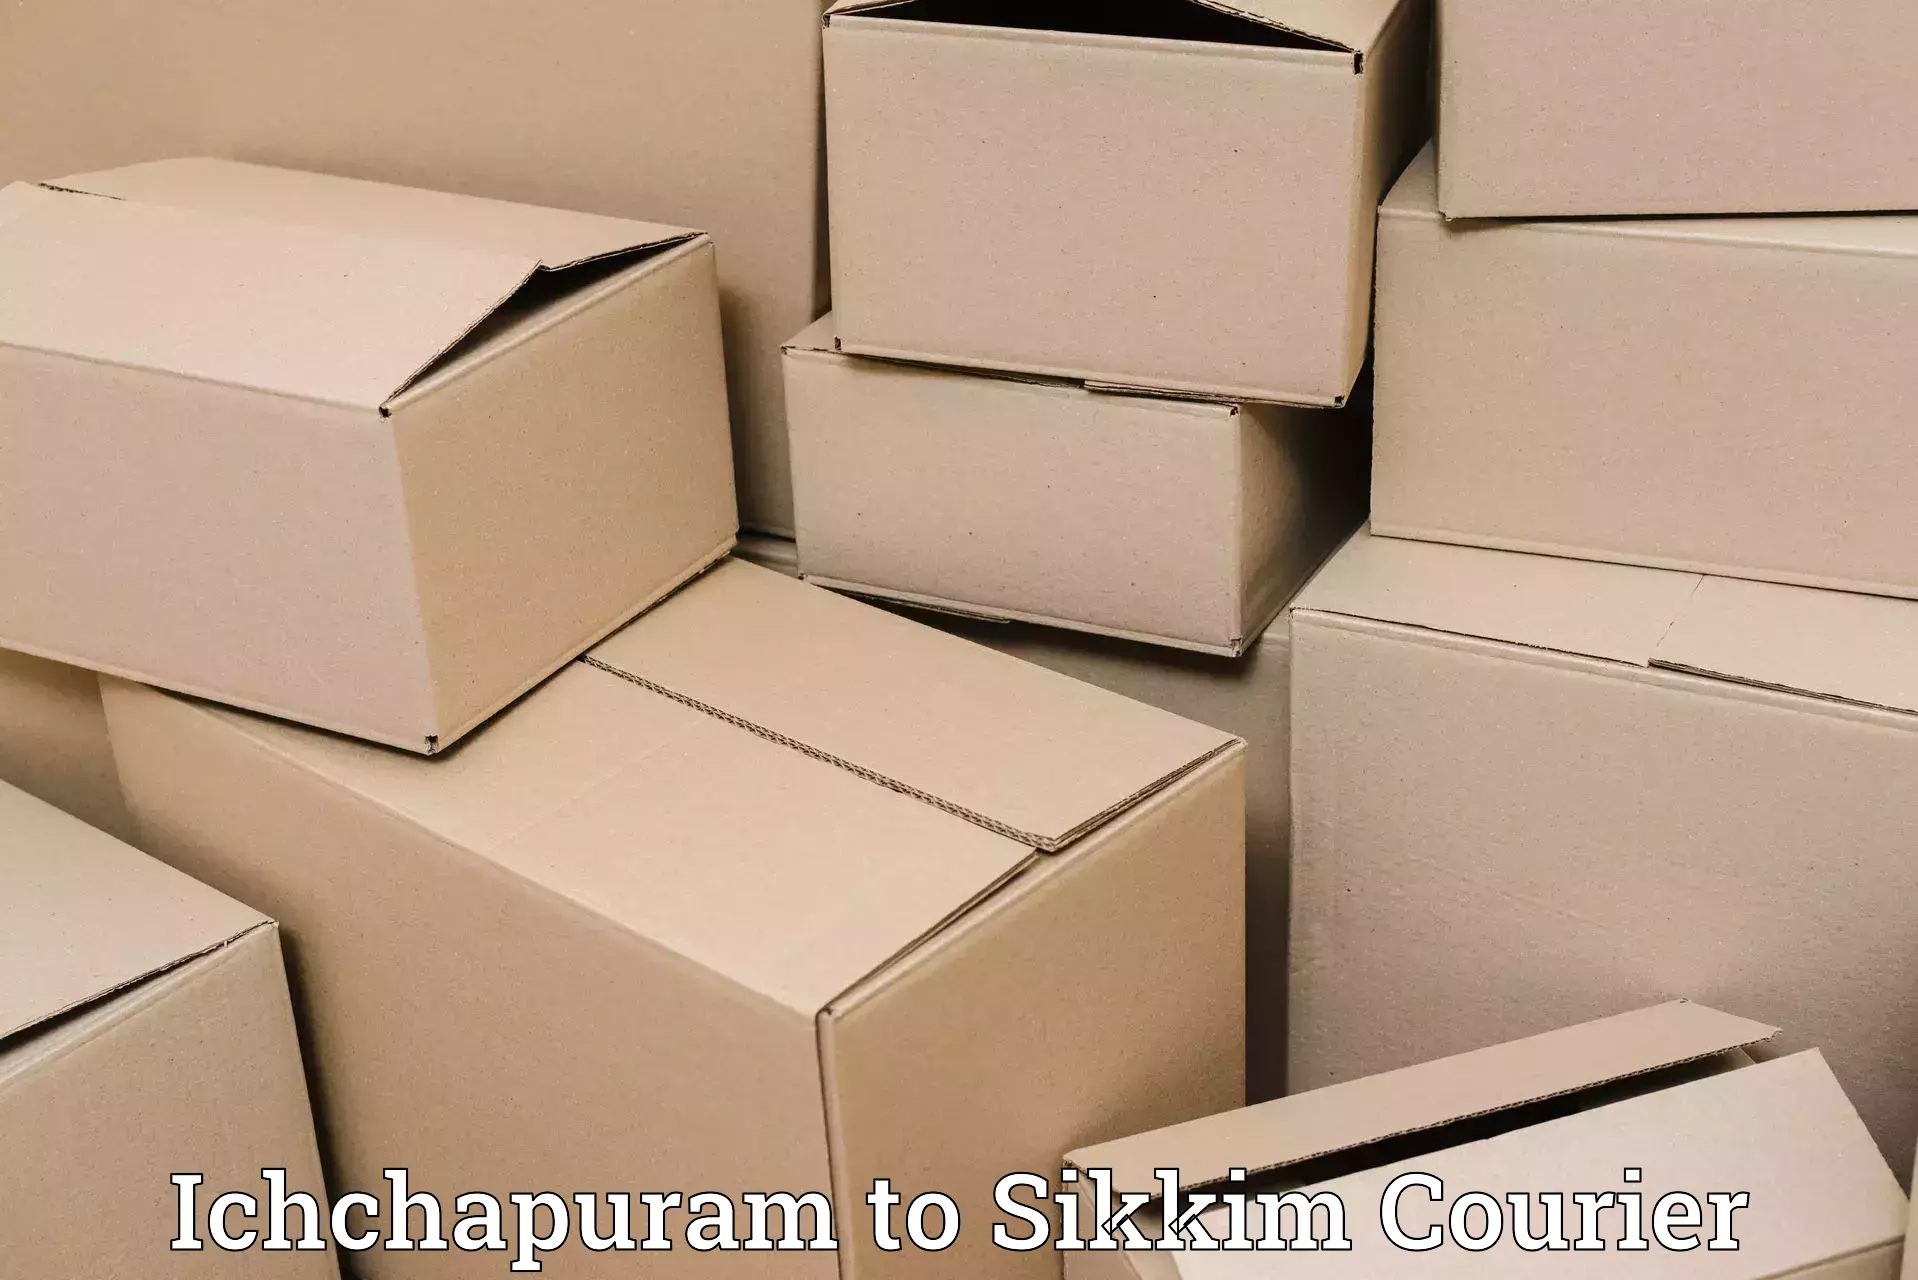 Subscription-based courier Ichchapuram to Sikkim